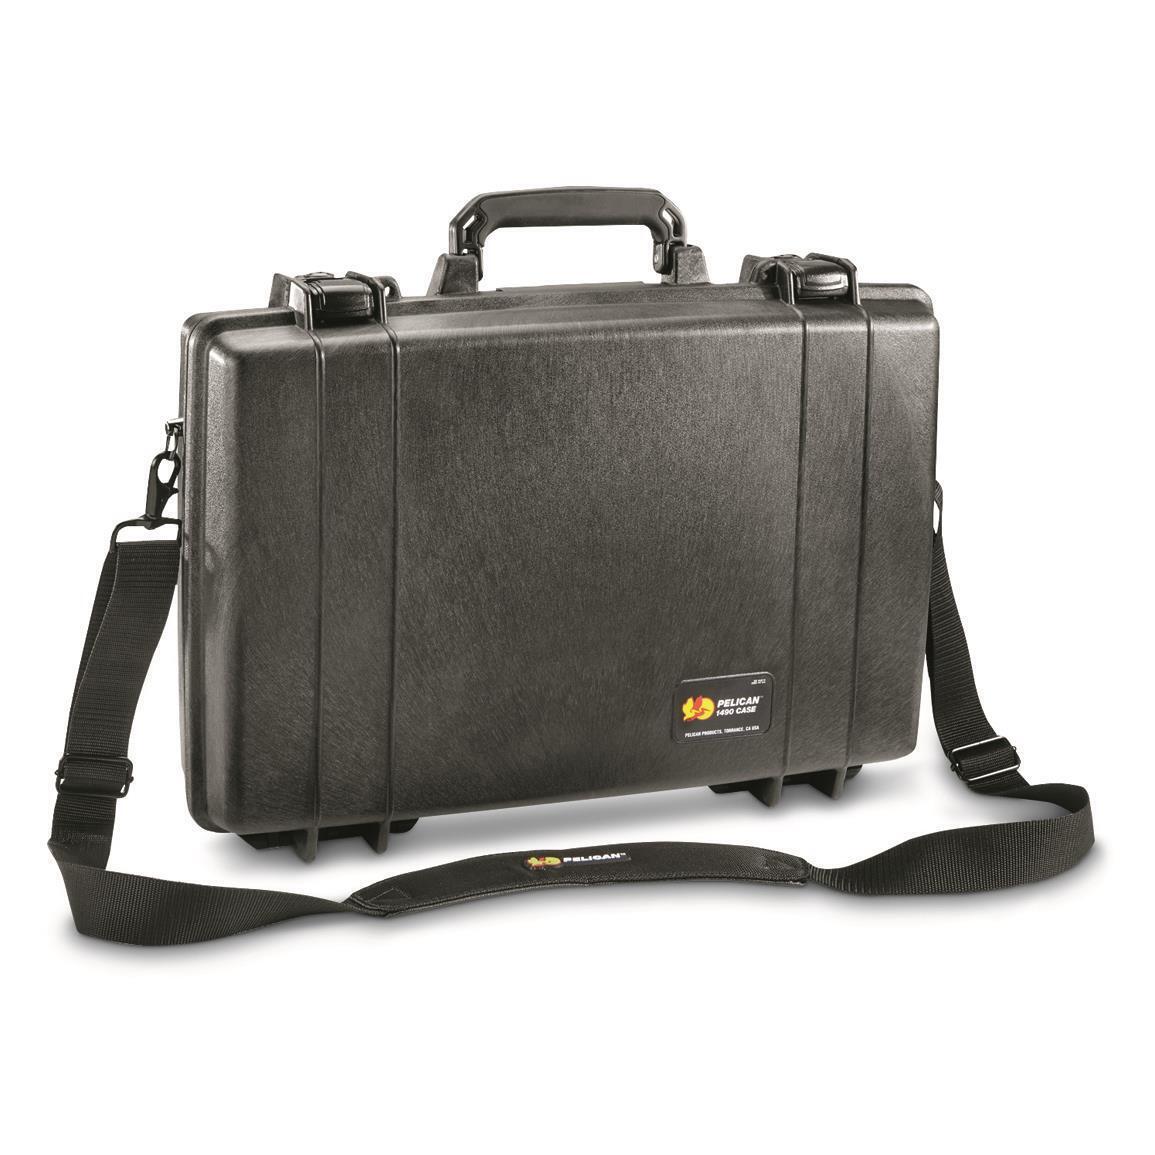 New U.S. Military Surplus Waterproof Pelican 1490 Protector Laptop Case, Black